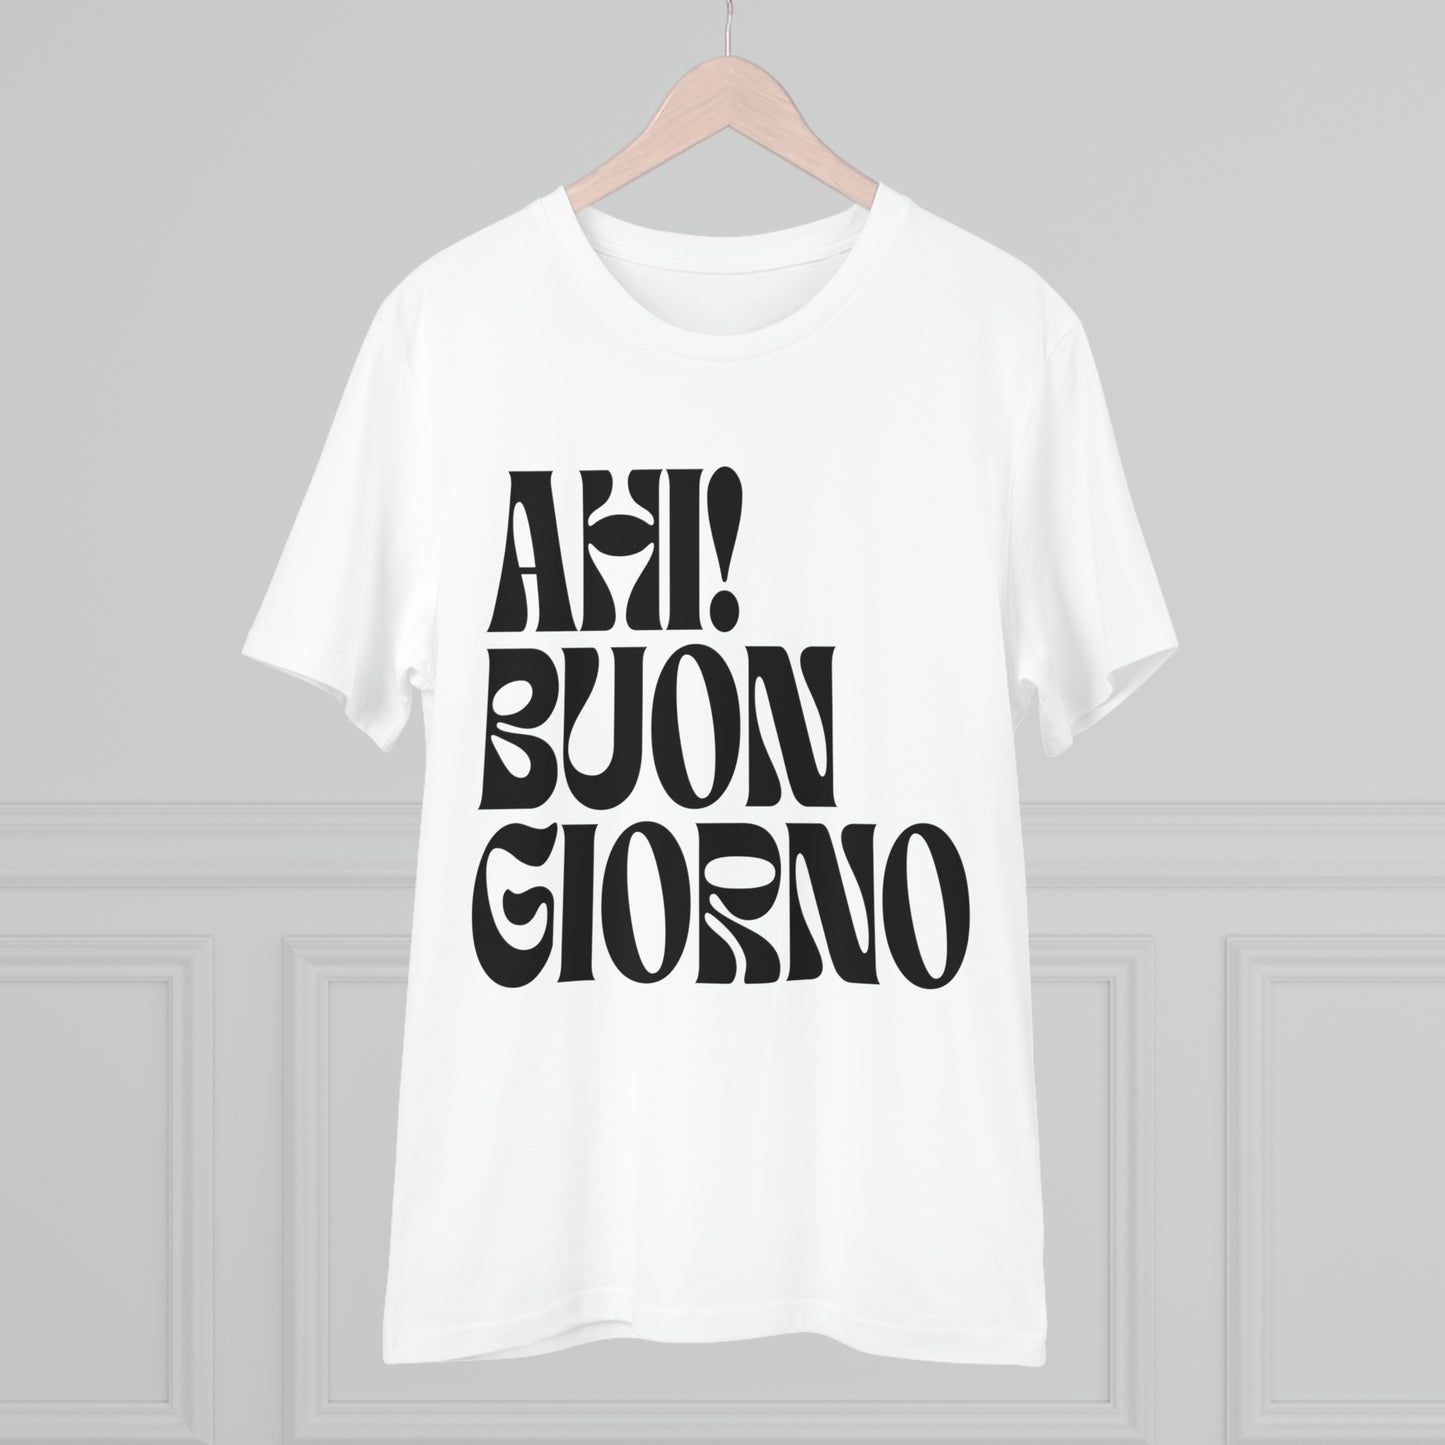 Foggy Project's new single Ahi! Buongiorno White T-shirt - Unisex